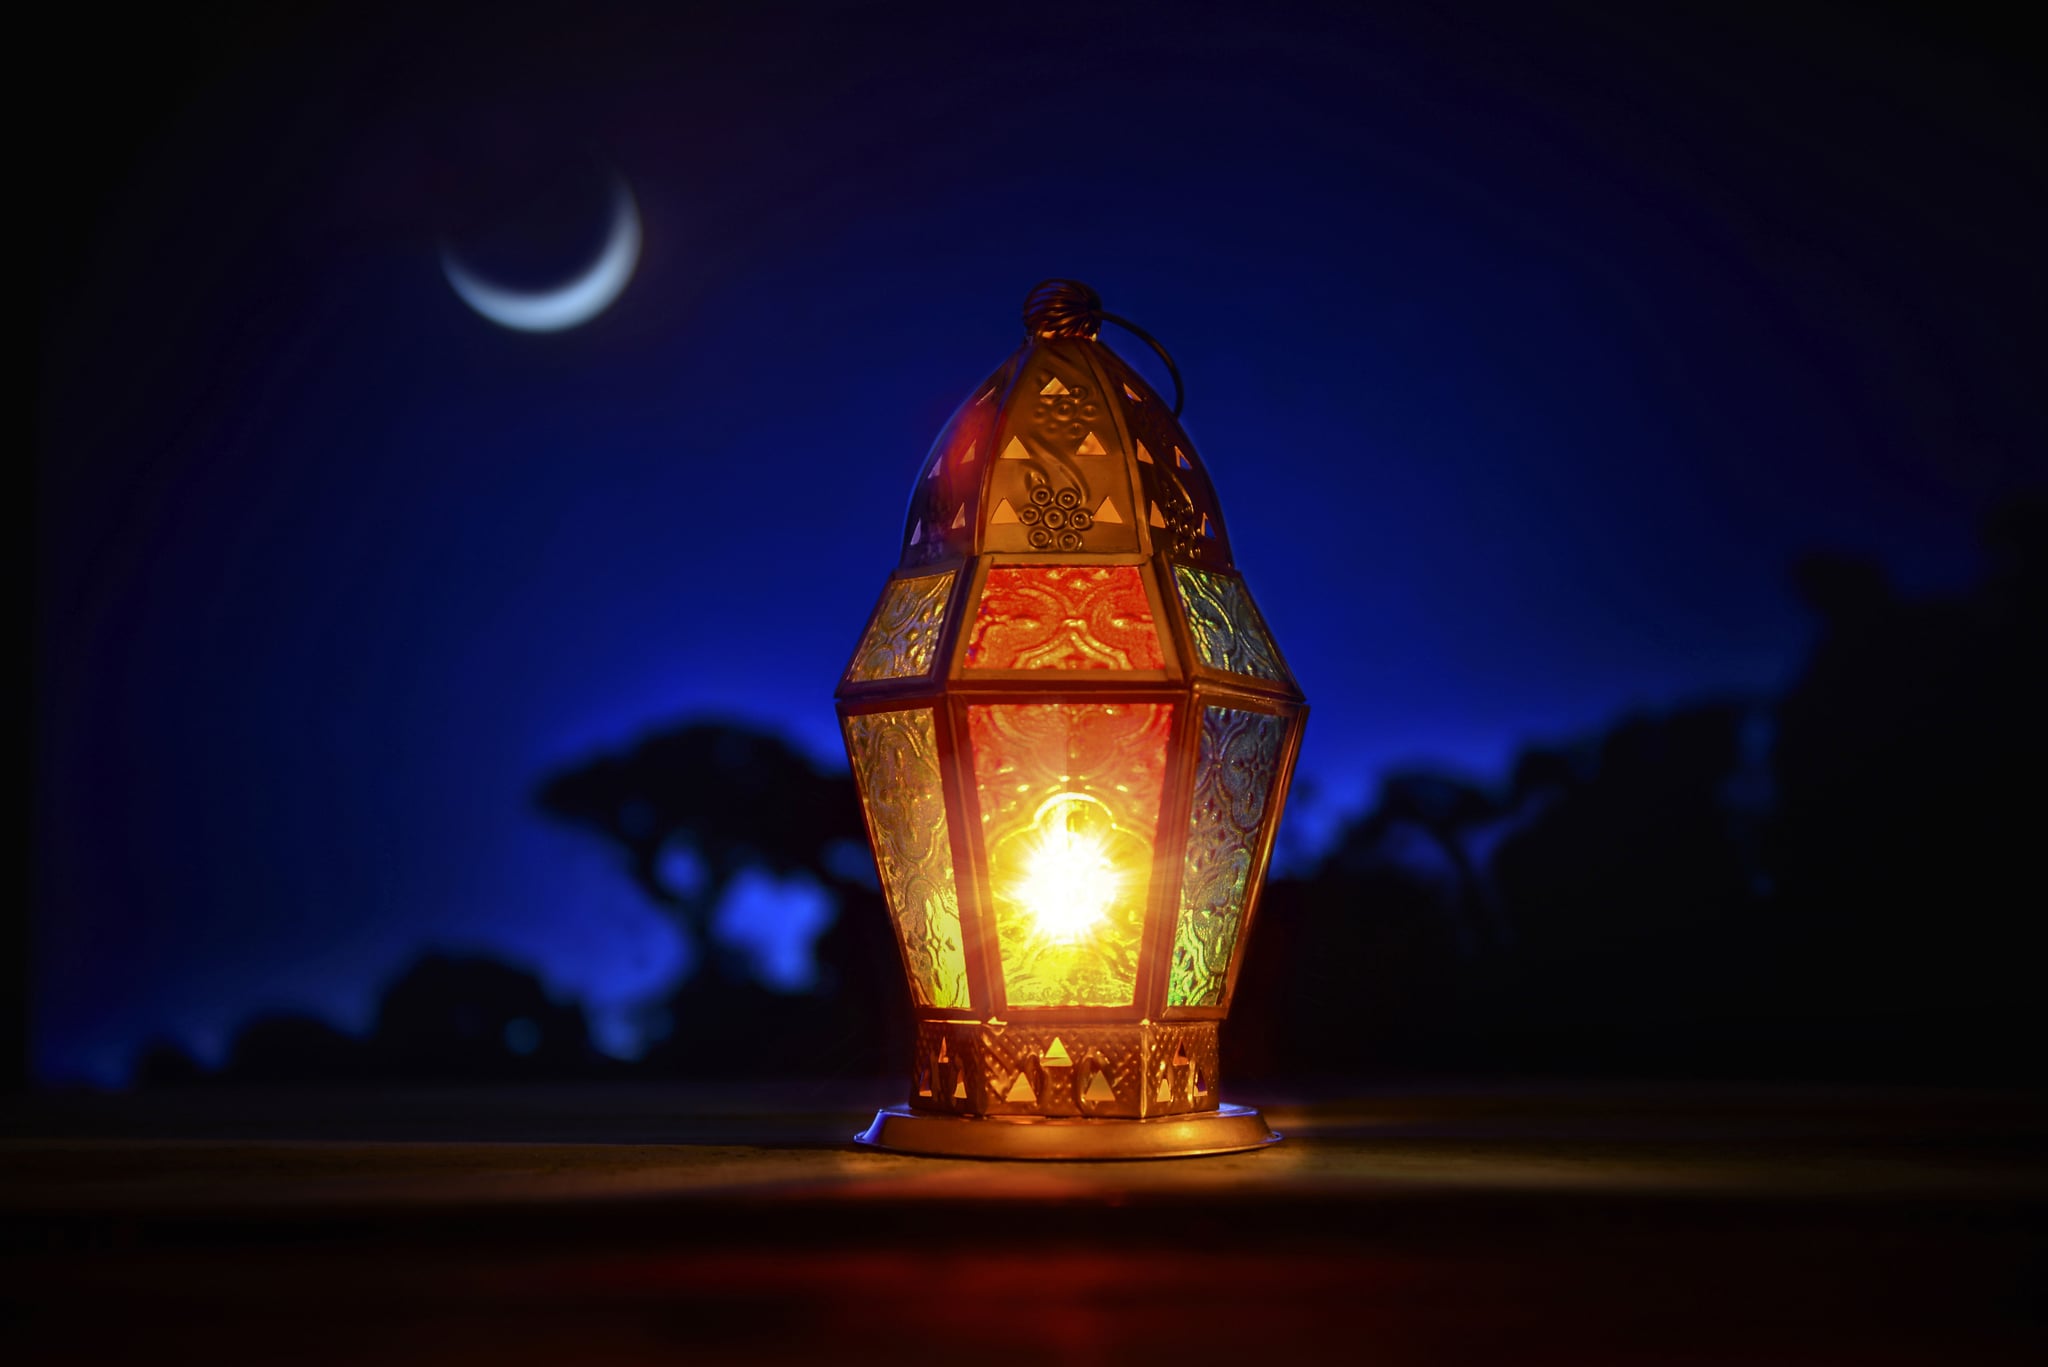 صورة صحة حديث من بلغ عبادي بشهر رمضان